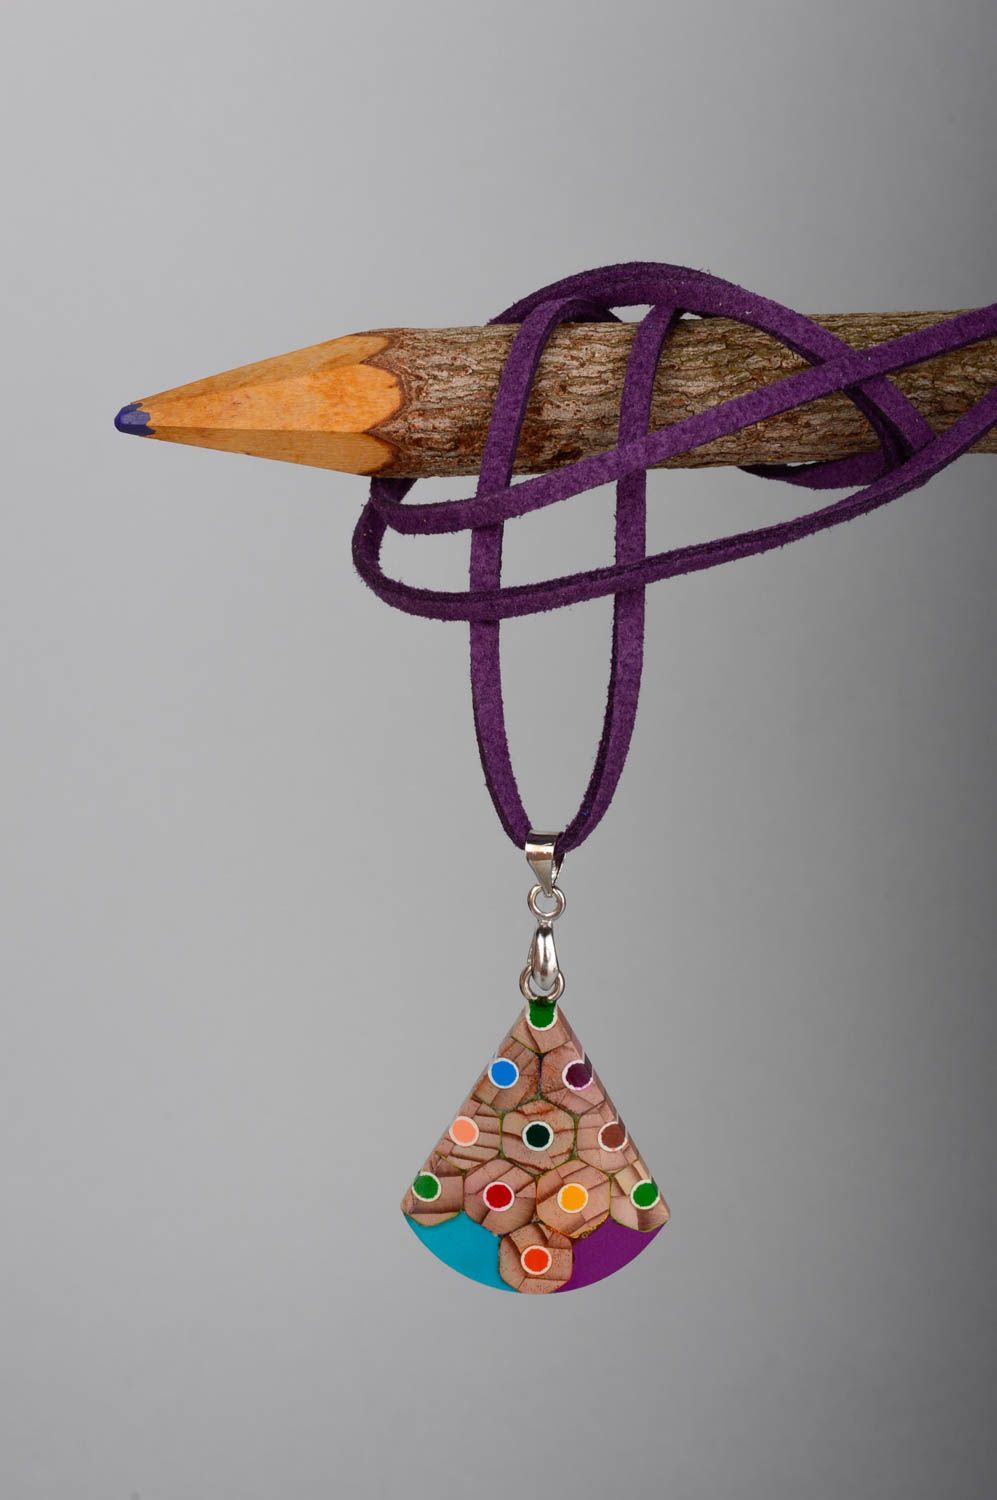 Кулон на шею украшение из карандашей ручная работа авторский кулон яркий  фото 1